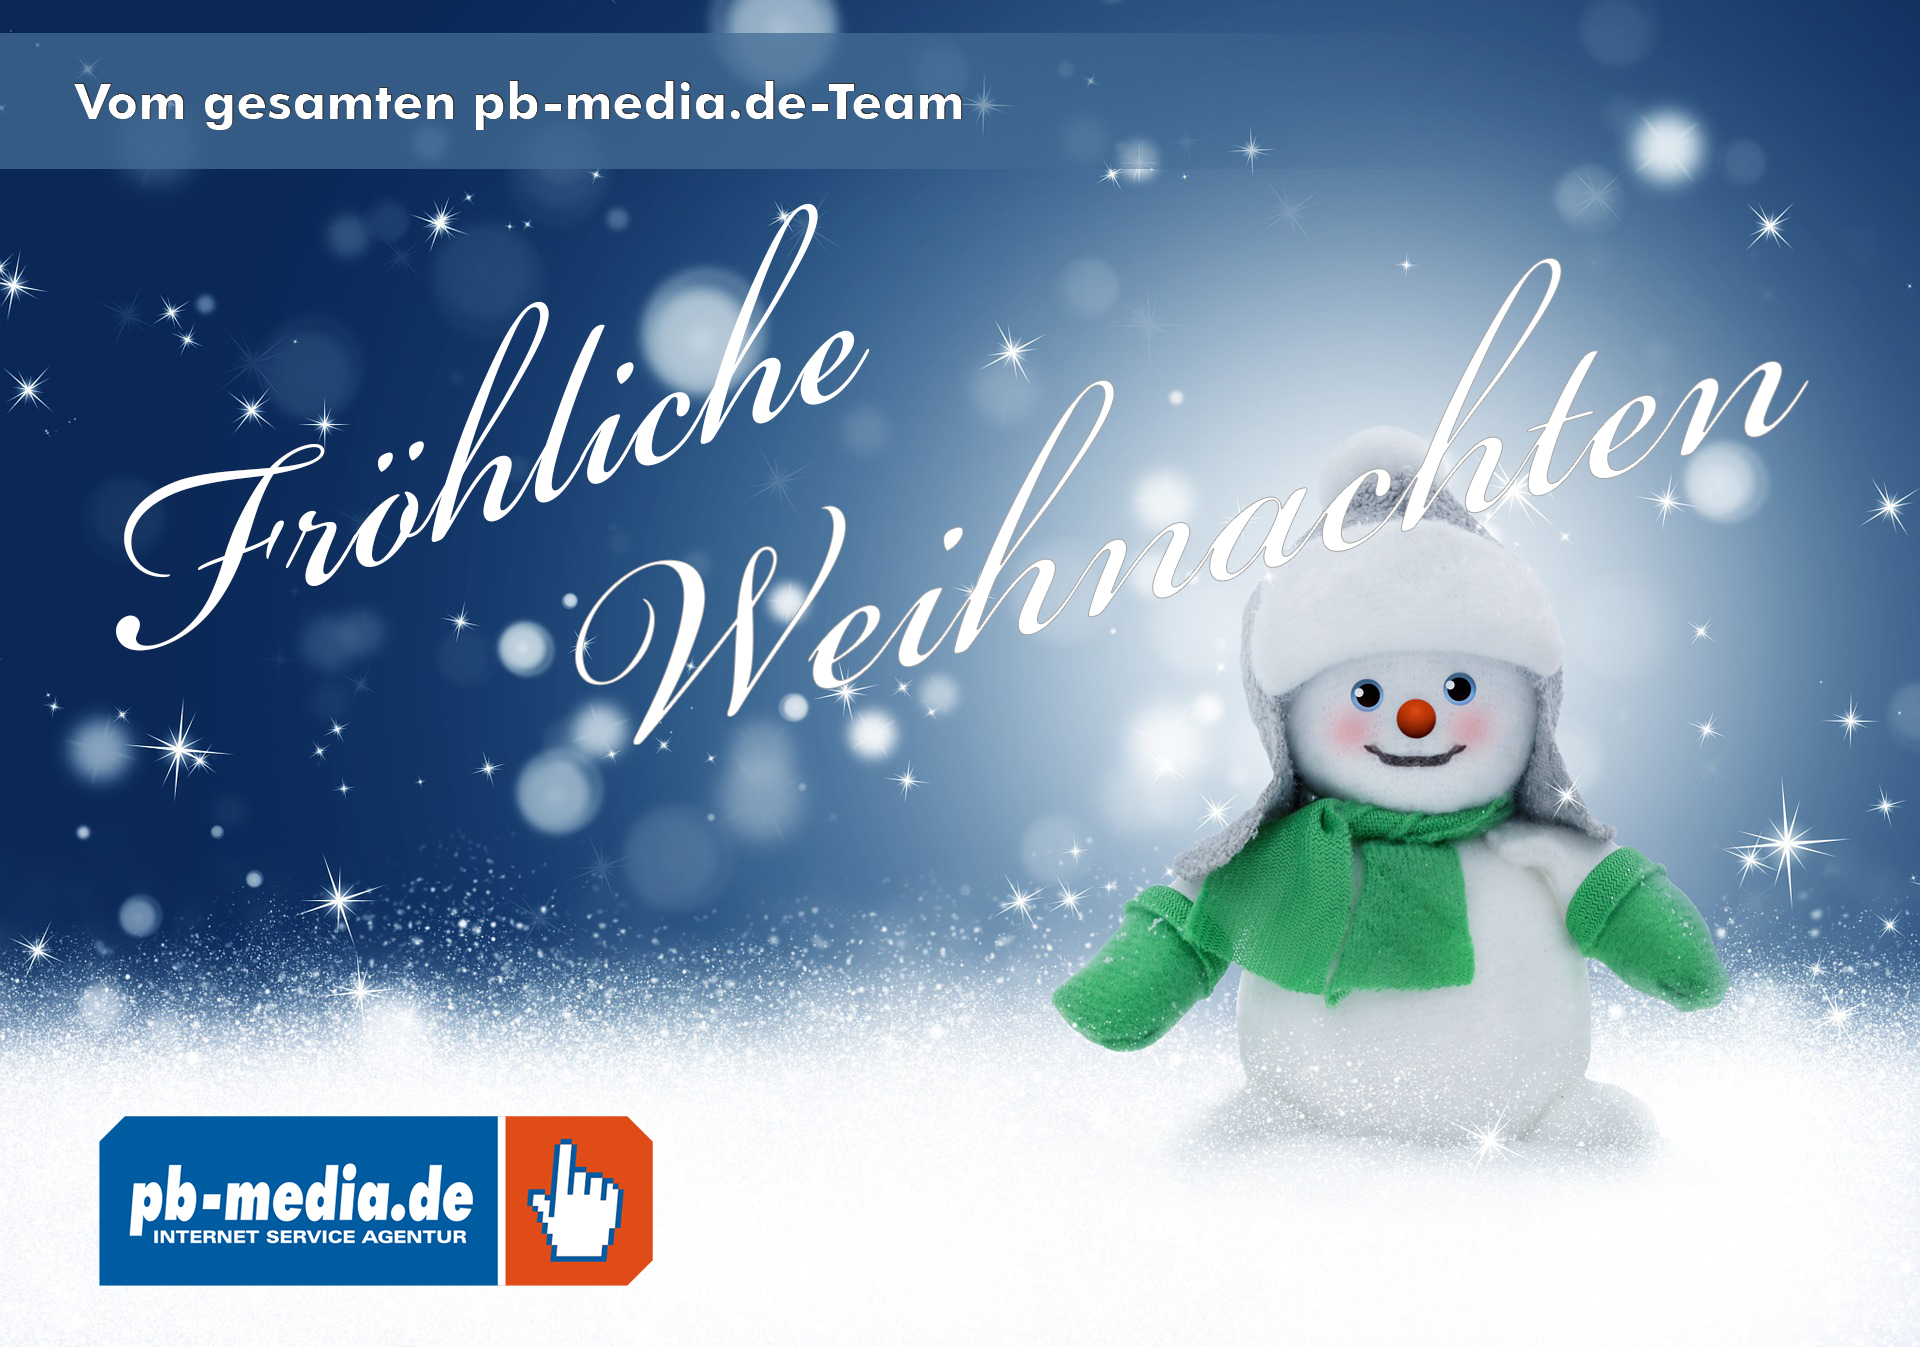 Fröhliche Weihnachten vom gesamten pb-media.de-Team